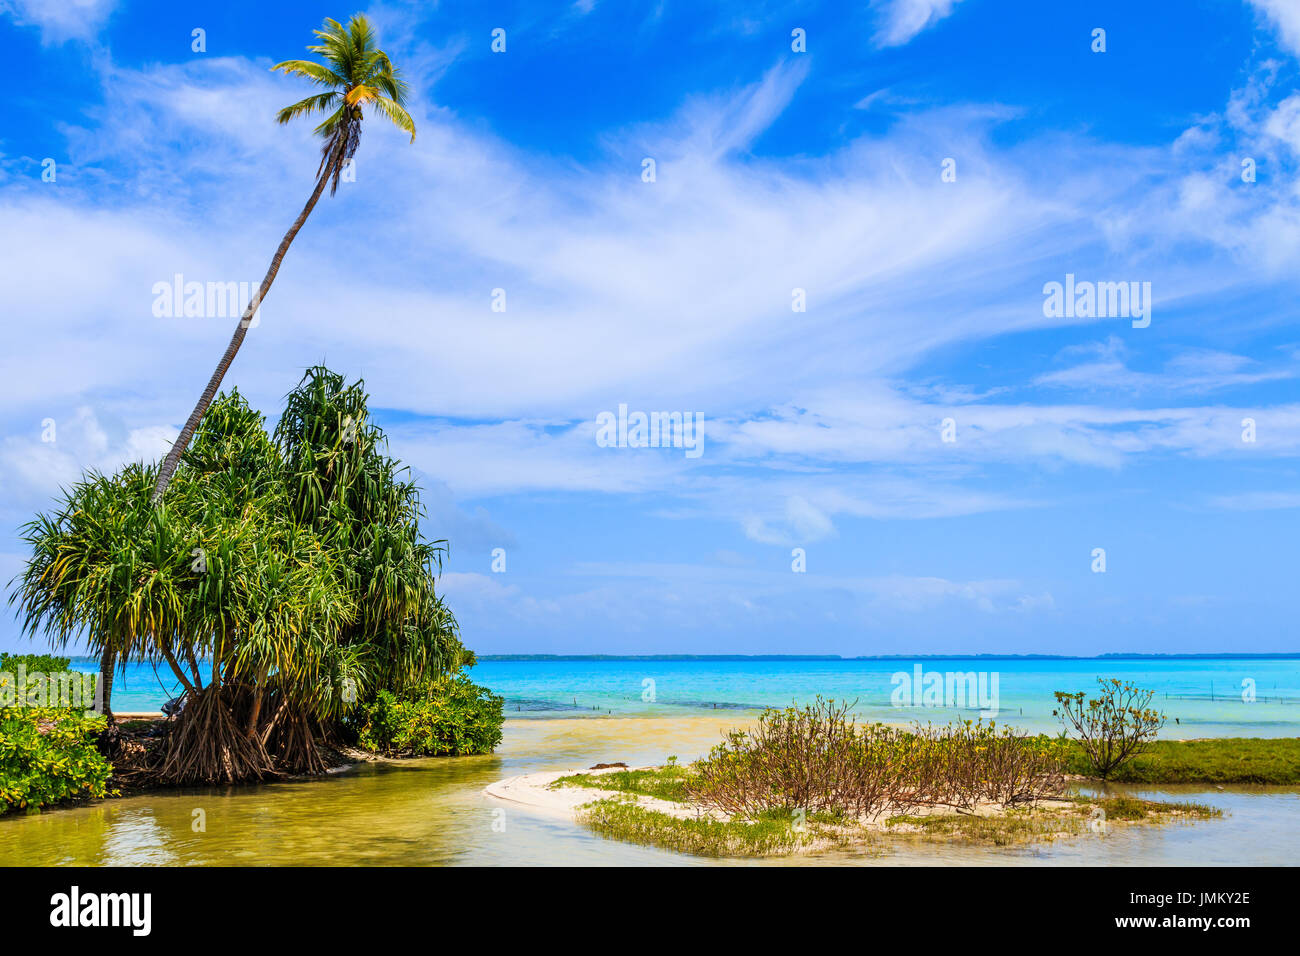 Tabuaeran, Fanning Island, République de Kiribati Tabuaeran.plage sur l'île Fanning, République de Kiribati Banque D'Images